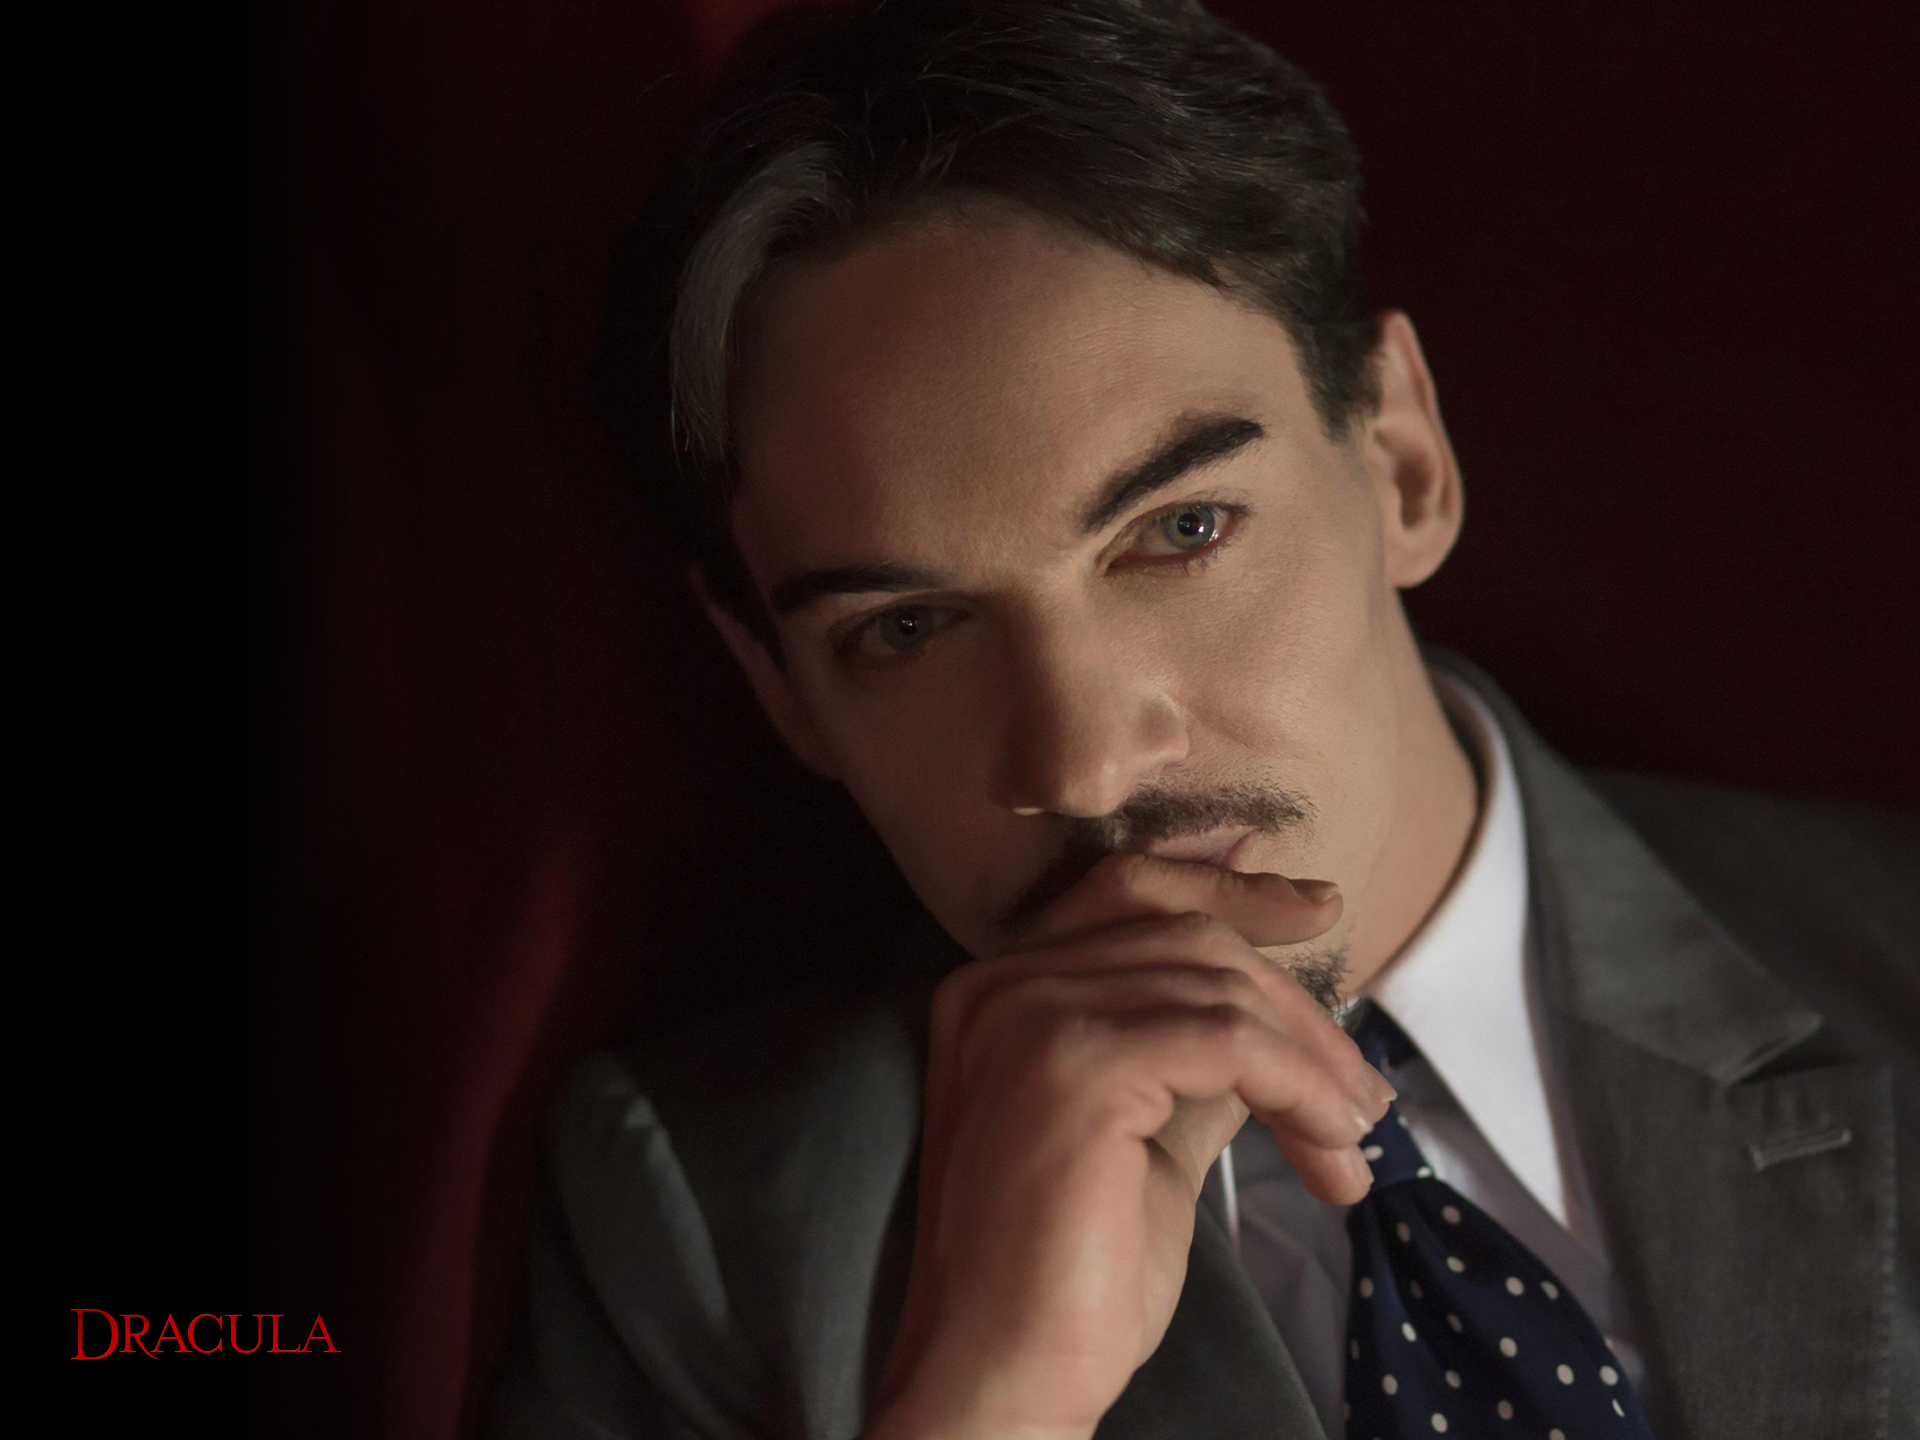 Dracula (2013) Wallpapers